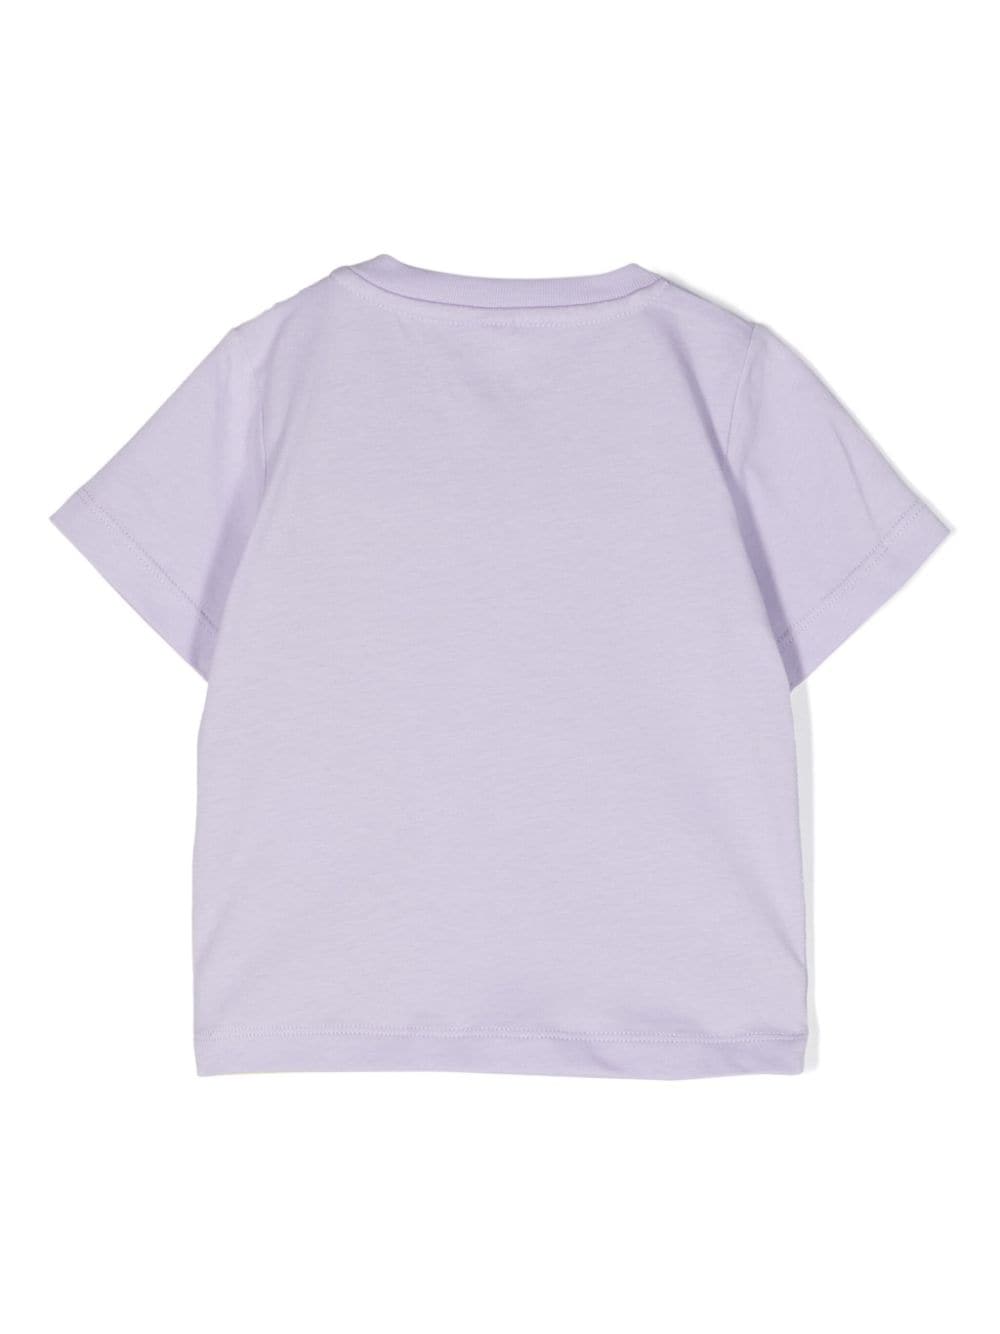 T-shirt nouveau-né lilas